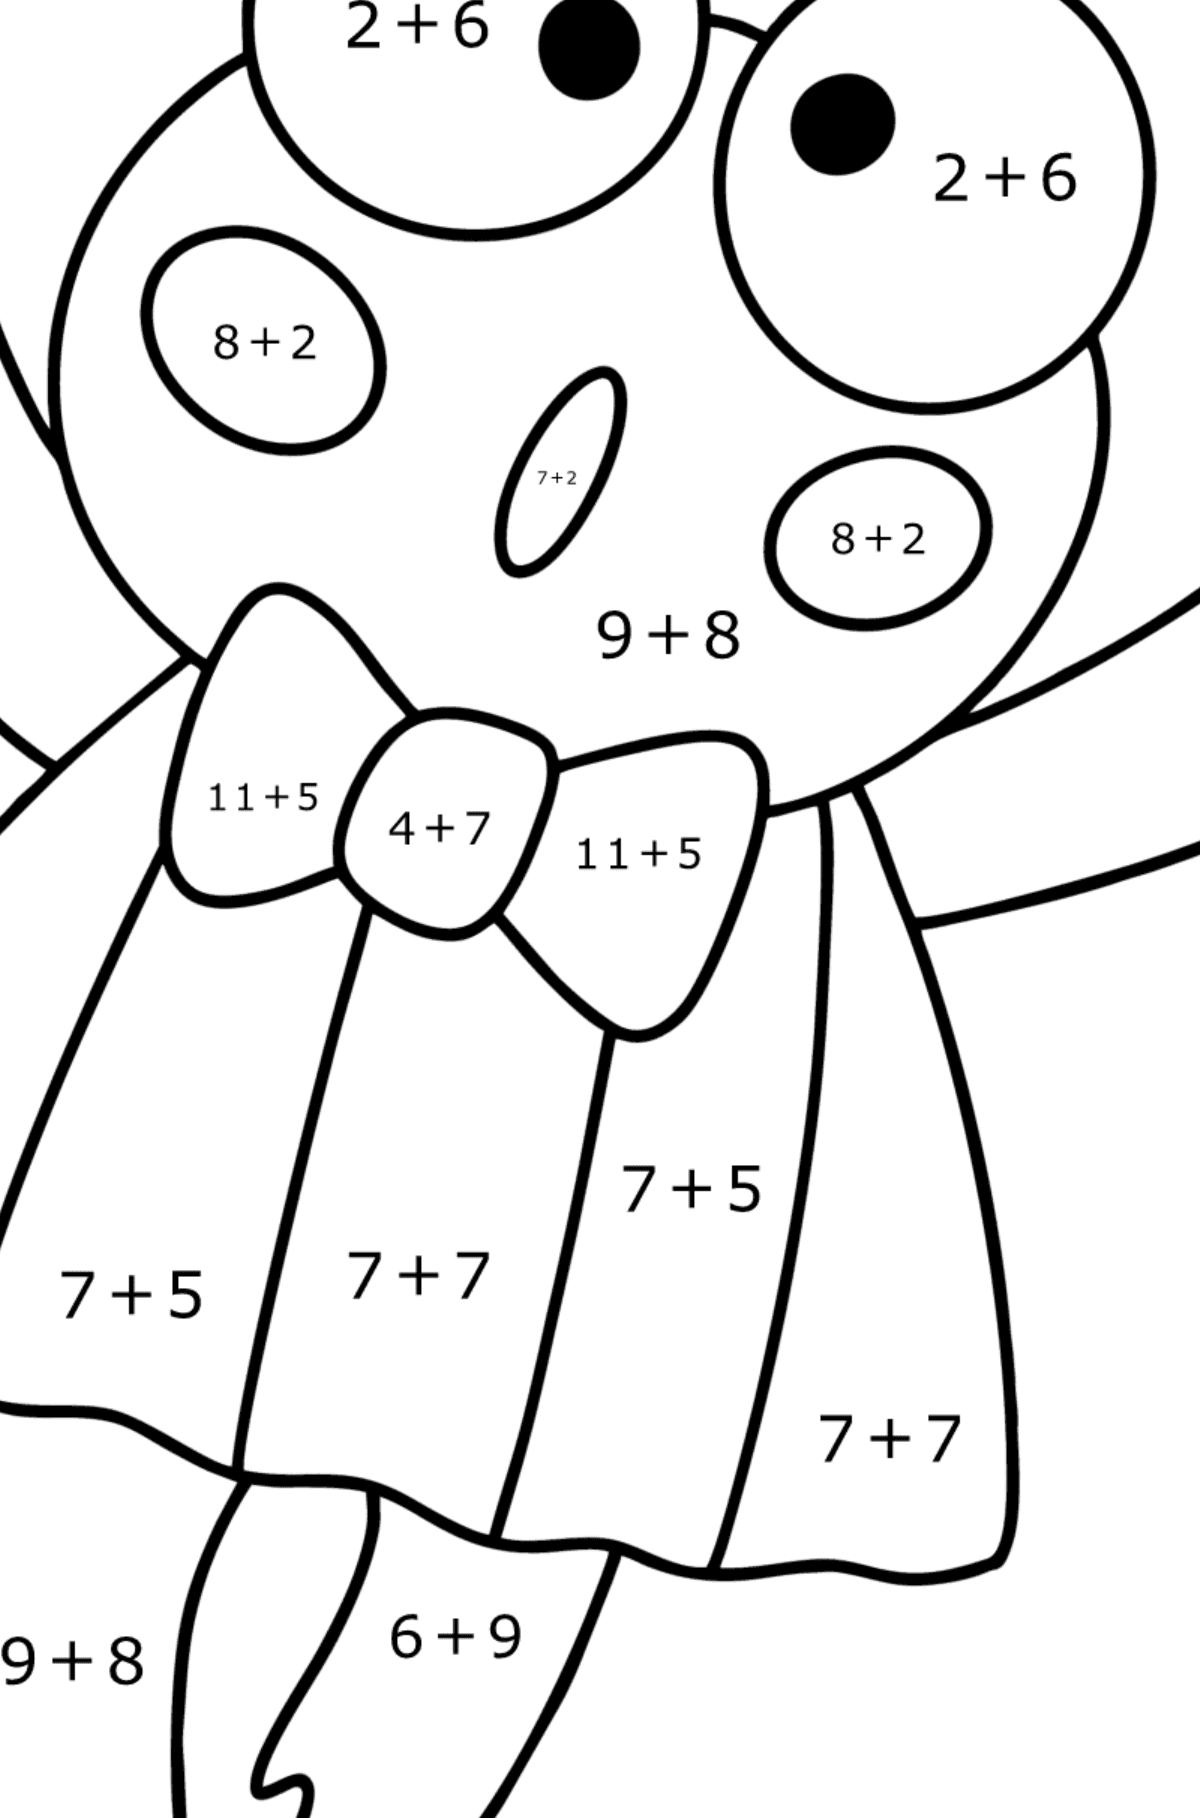 Boyama sayfası Keroppi - Matematik Boyama - Toplama çocuklar için